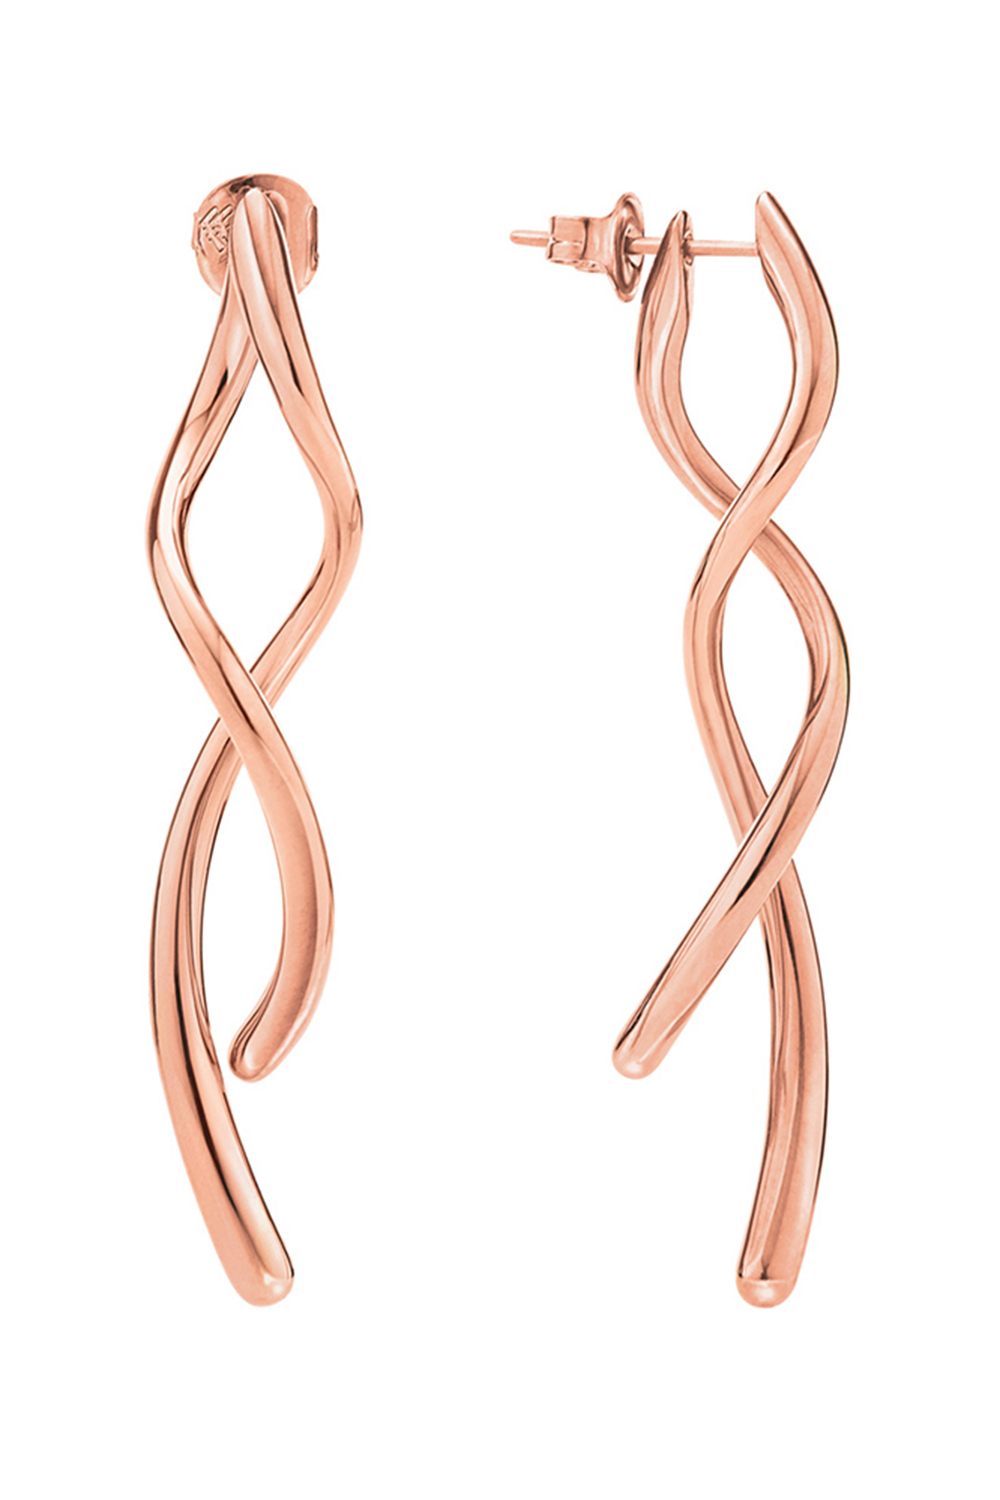 Γυναικεία/Αξεσουάρ/Κοσμήματα/Σκουλαρίκια FOLLI FOLLIE - Γυναικεία μακριά σκουλαρίκια από ορείχαλκο FOLLI FOLLIE FLUIDITY ροζ χρυσό